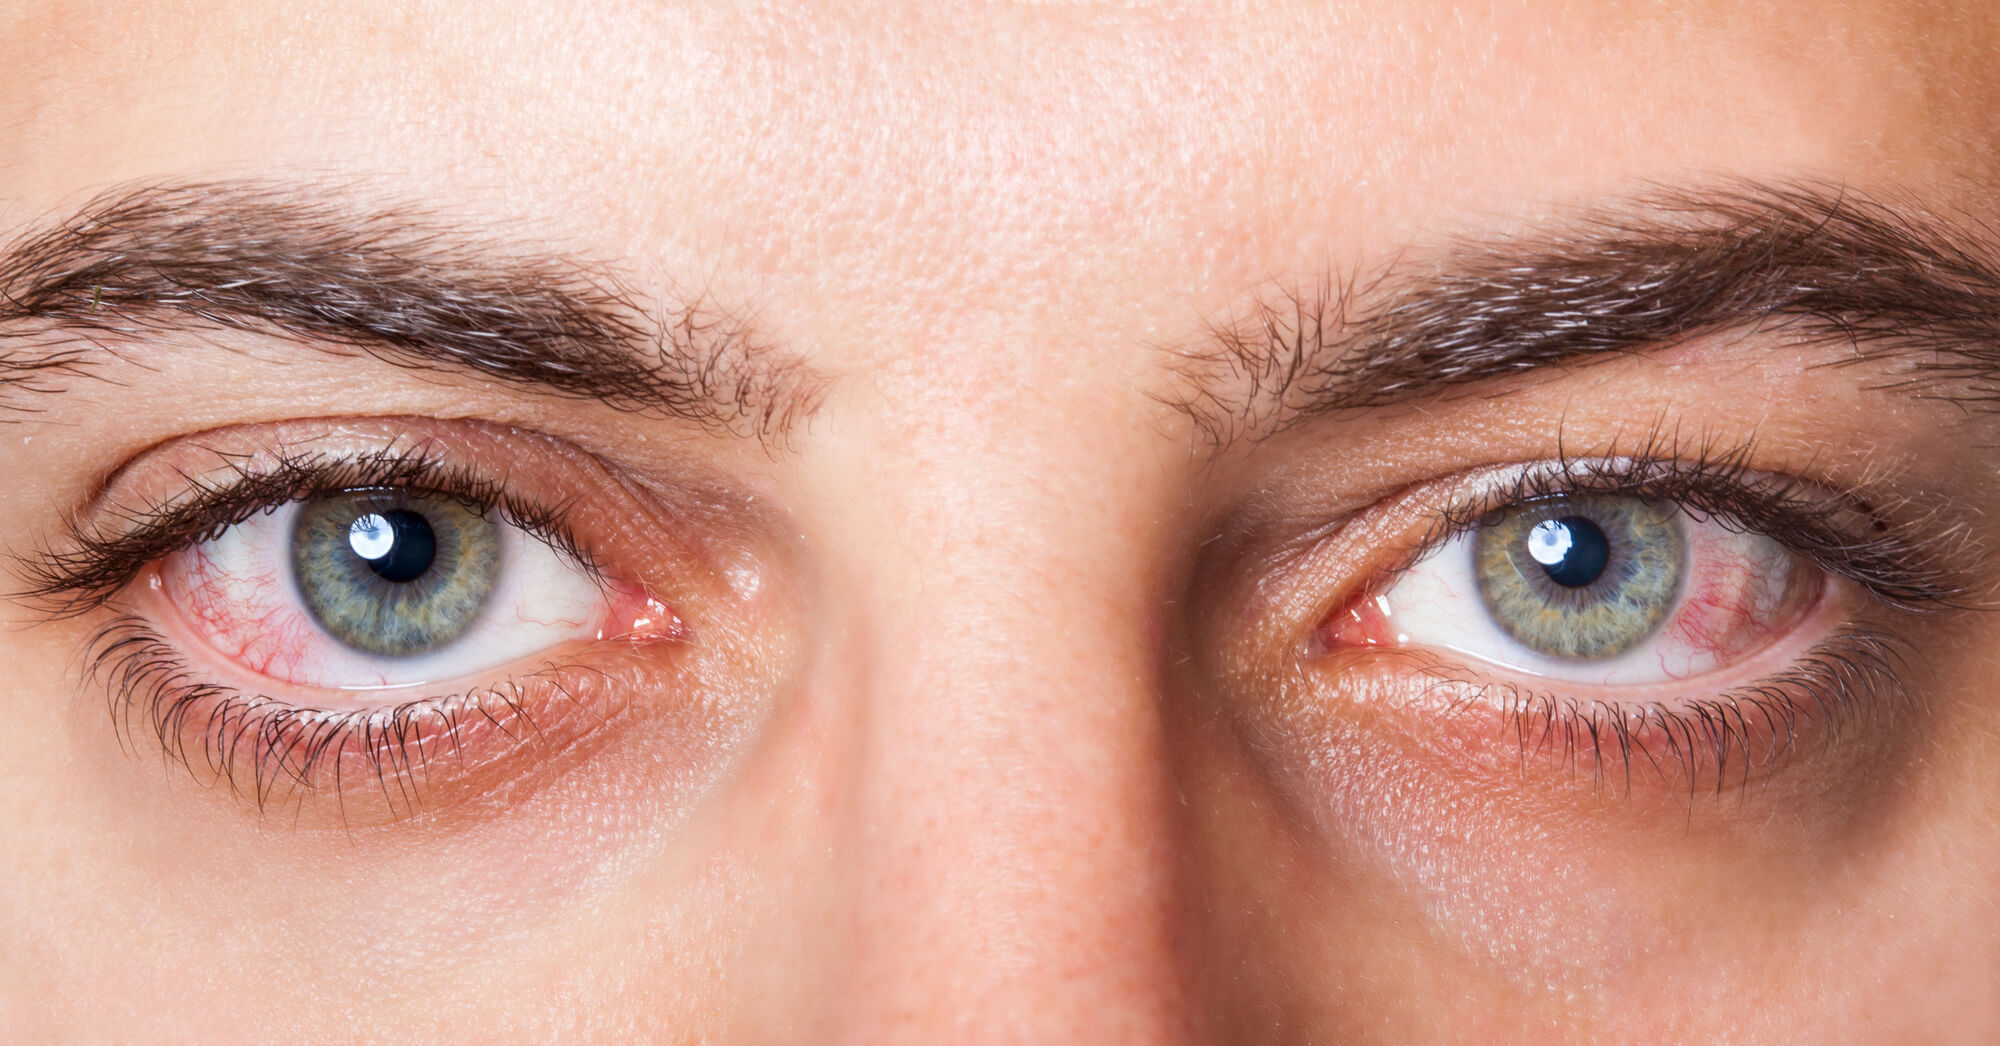 اسباب احمرار العين عدة وأبرزها الحساسية أو التعرض لغبار